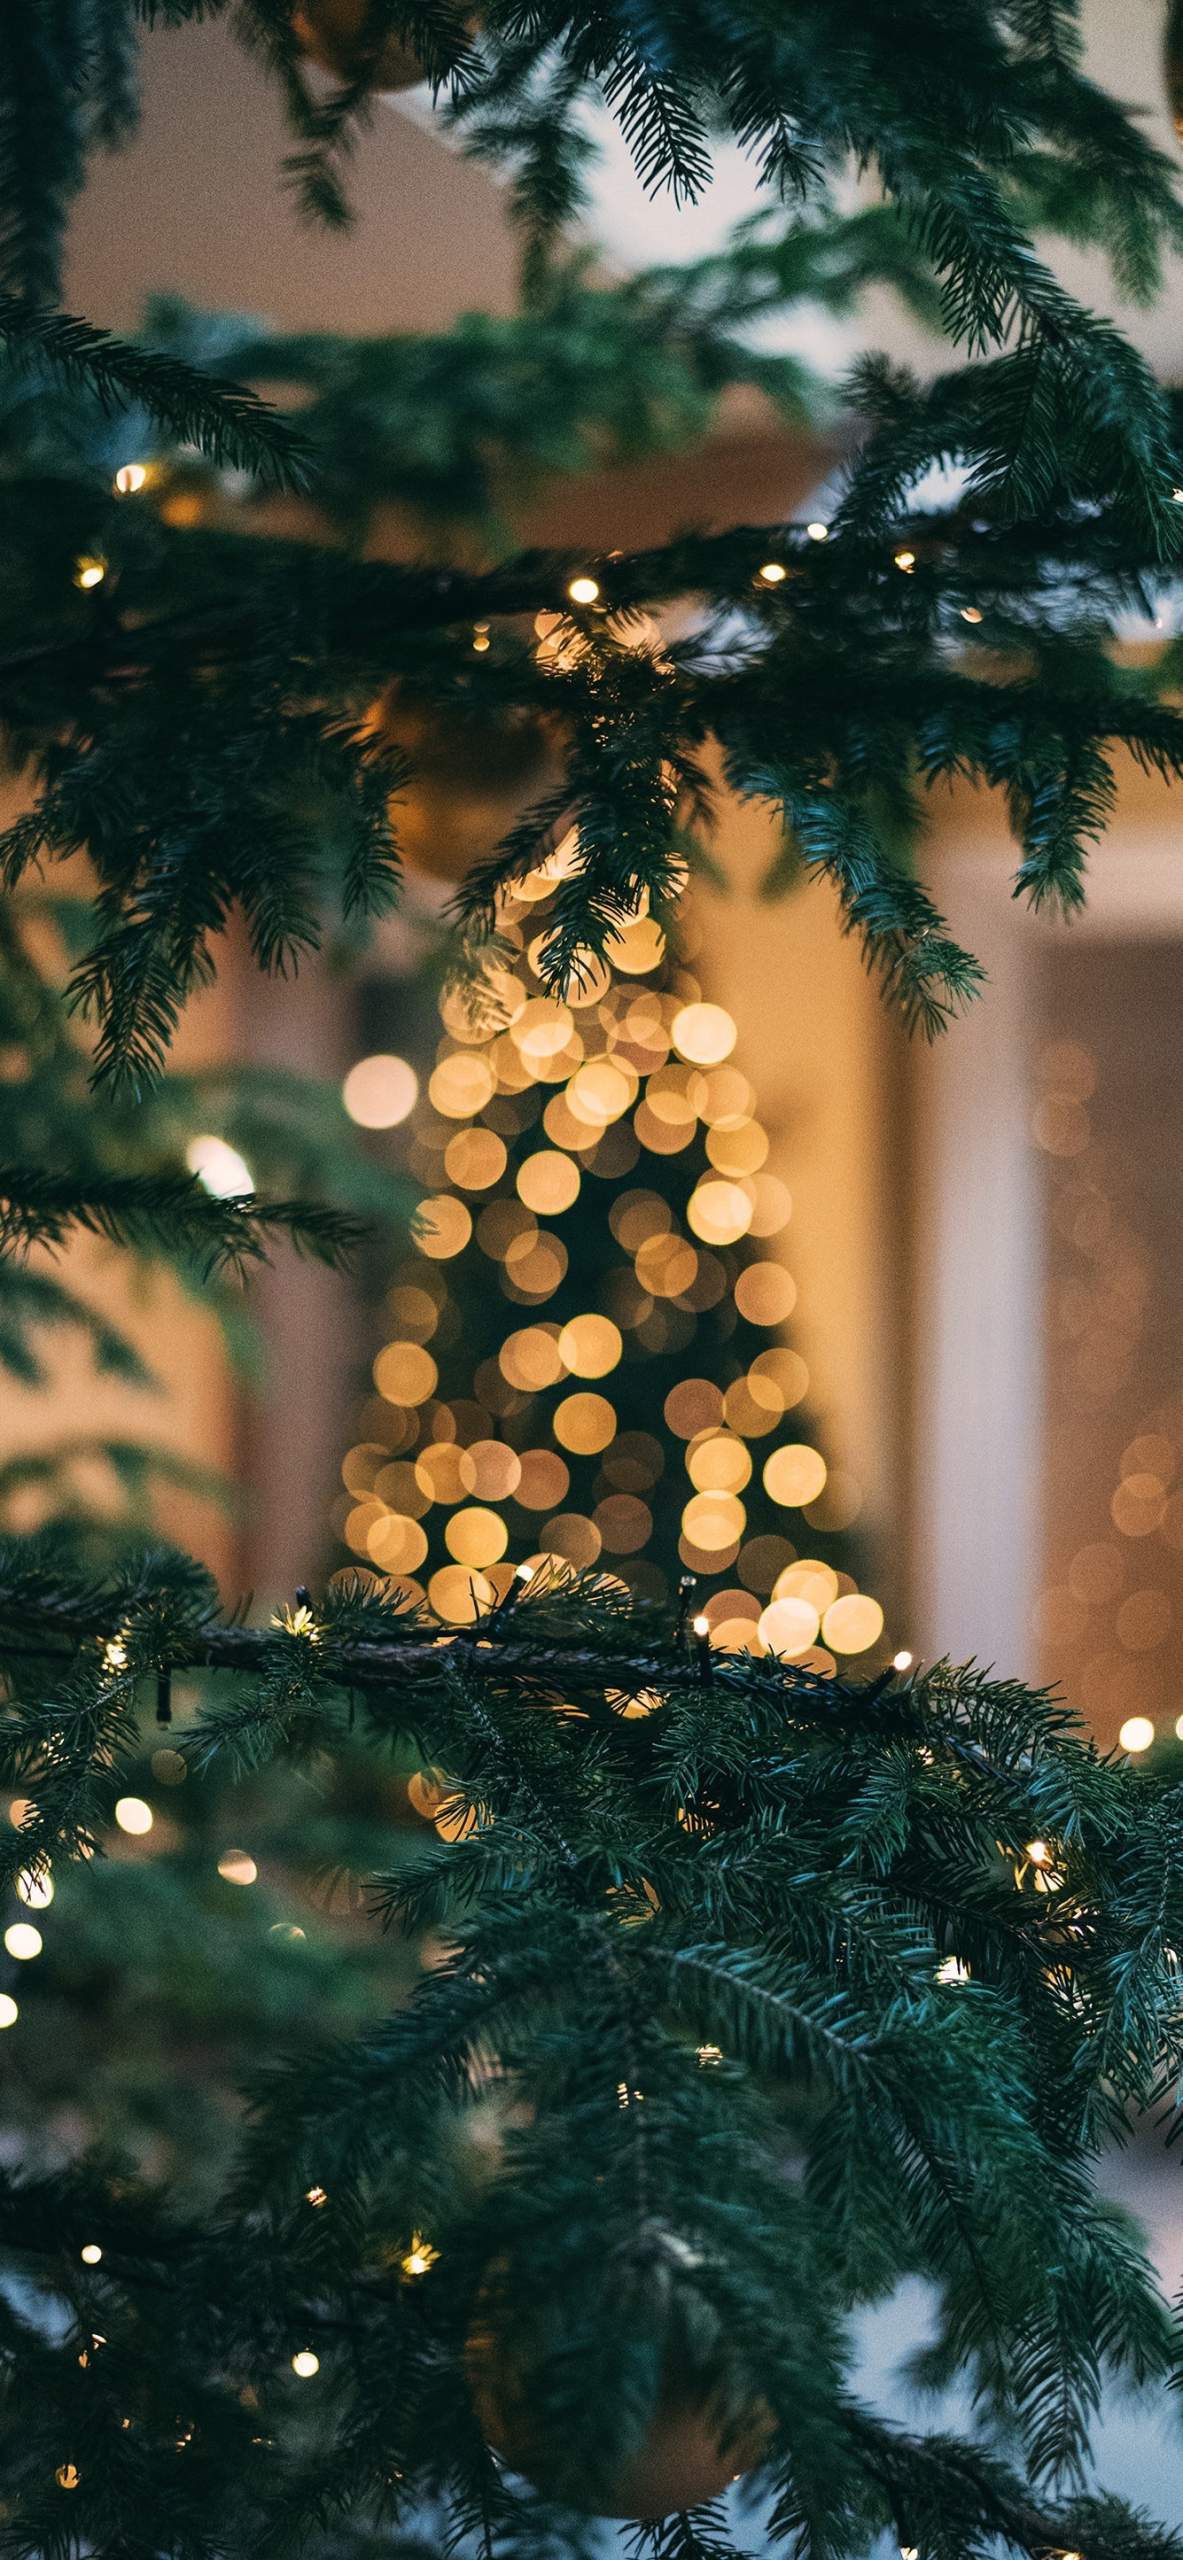 Giáng Sinh 2019: Giáng Sinh đang đến rất gần! Cùng nhau đón chào một mùa lễ hội ấm áp, đầy niềm vui và hạnh phúc. Các hoạt động vui chơi, mua sắm và quà tặng đang dần trở nên sôi động hơn bao giờ hết. Hãy cùng chiêm ngưỡng những hình ảnh đón Giáng Sinh 2019 để cảm nhận thêm sự tràn đầy niềm vui trong không khí lễ hội!